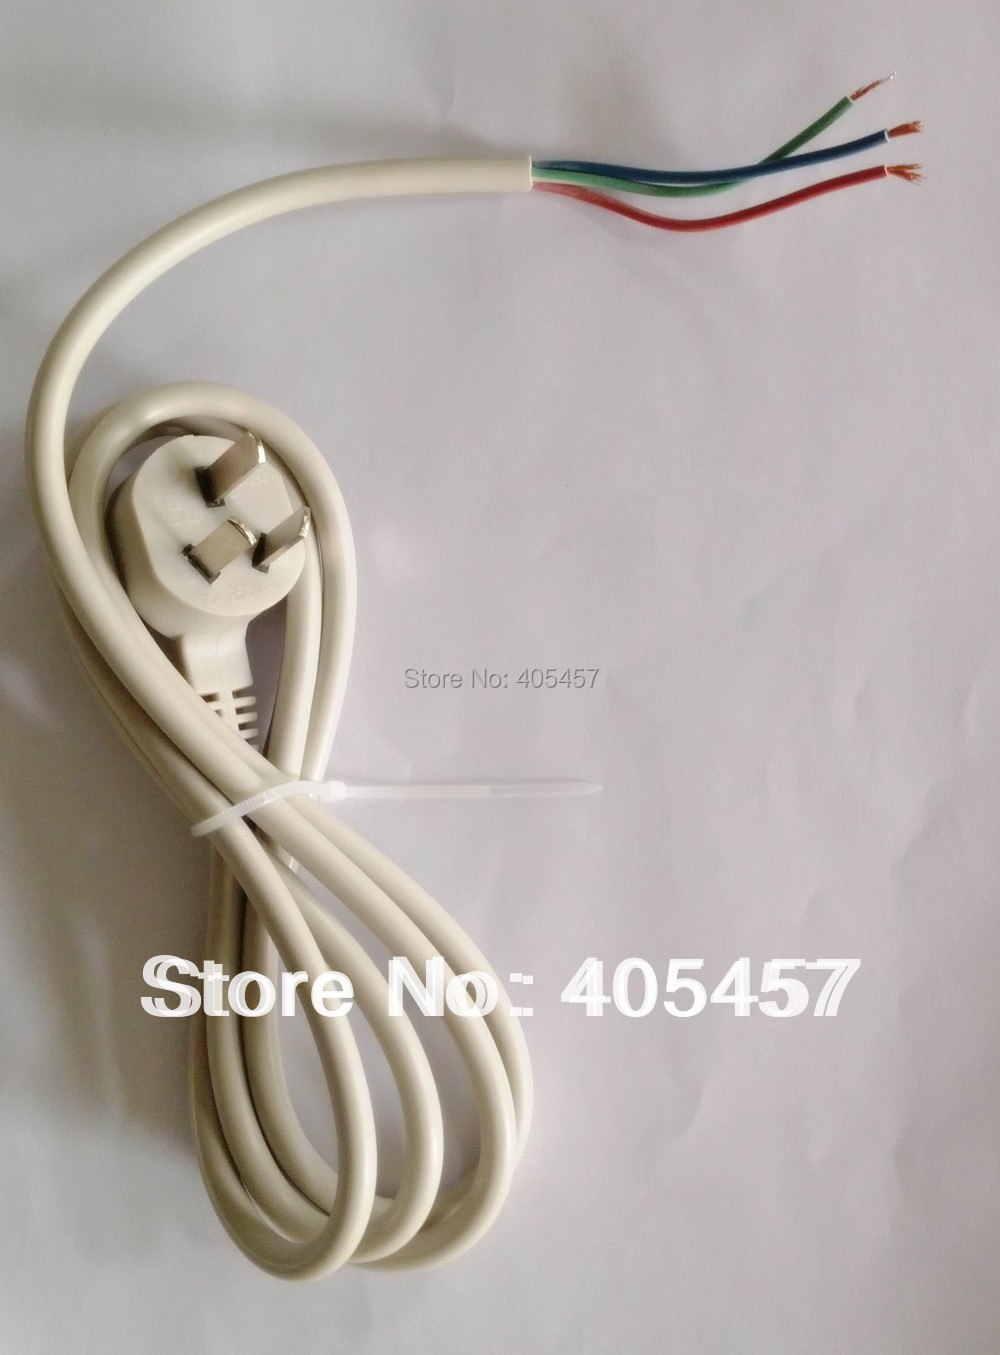 Здесь можно купить  0.75 square power cord,gray - white power cord,customized power cord  Электротехническое оборудование и материалы